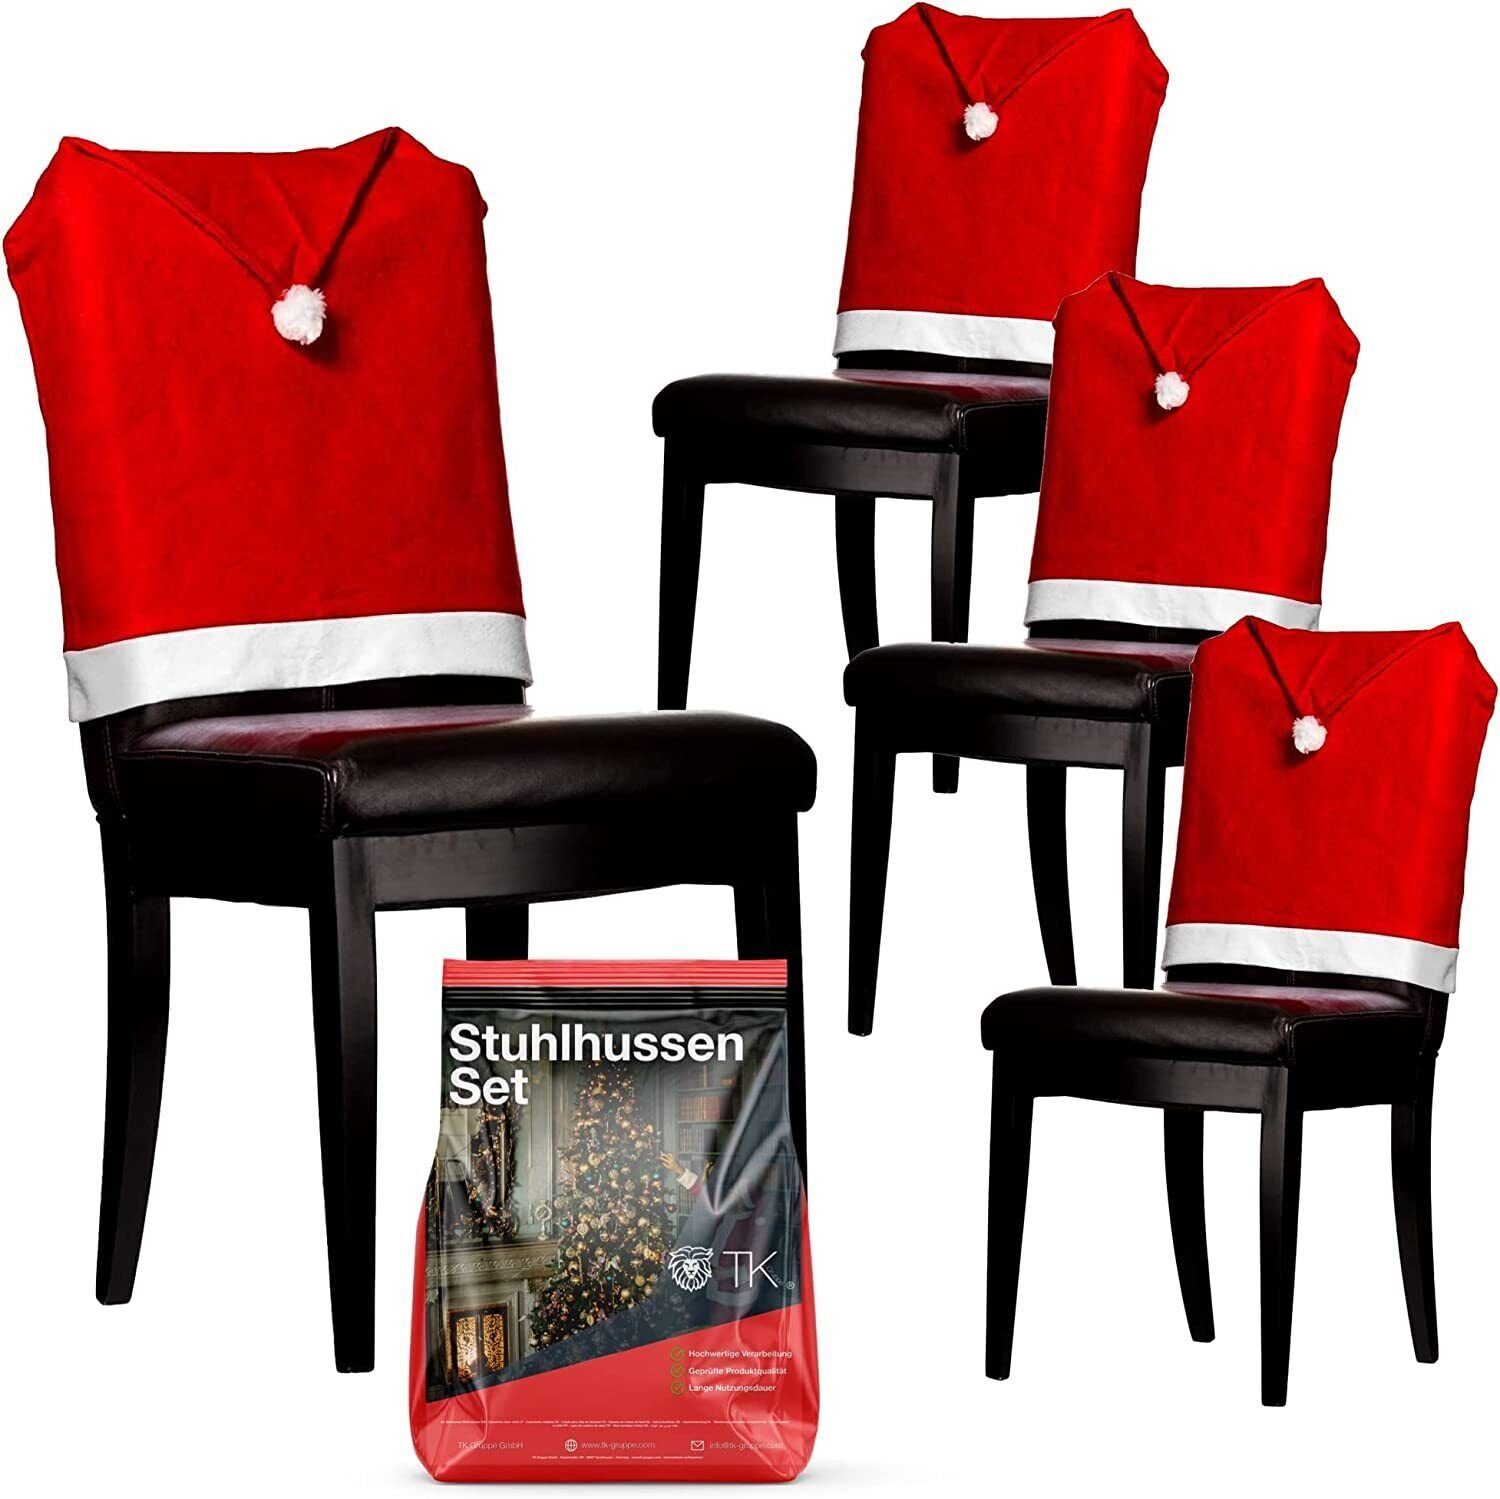 6x TK - Stuhlhusse Weihnachten Überzug Gruppe Advent, Stuhlhusse Stuhlüberzug